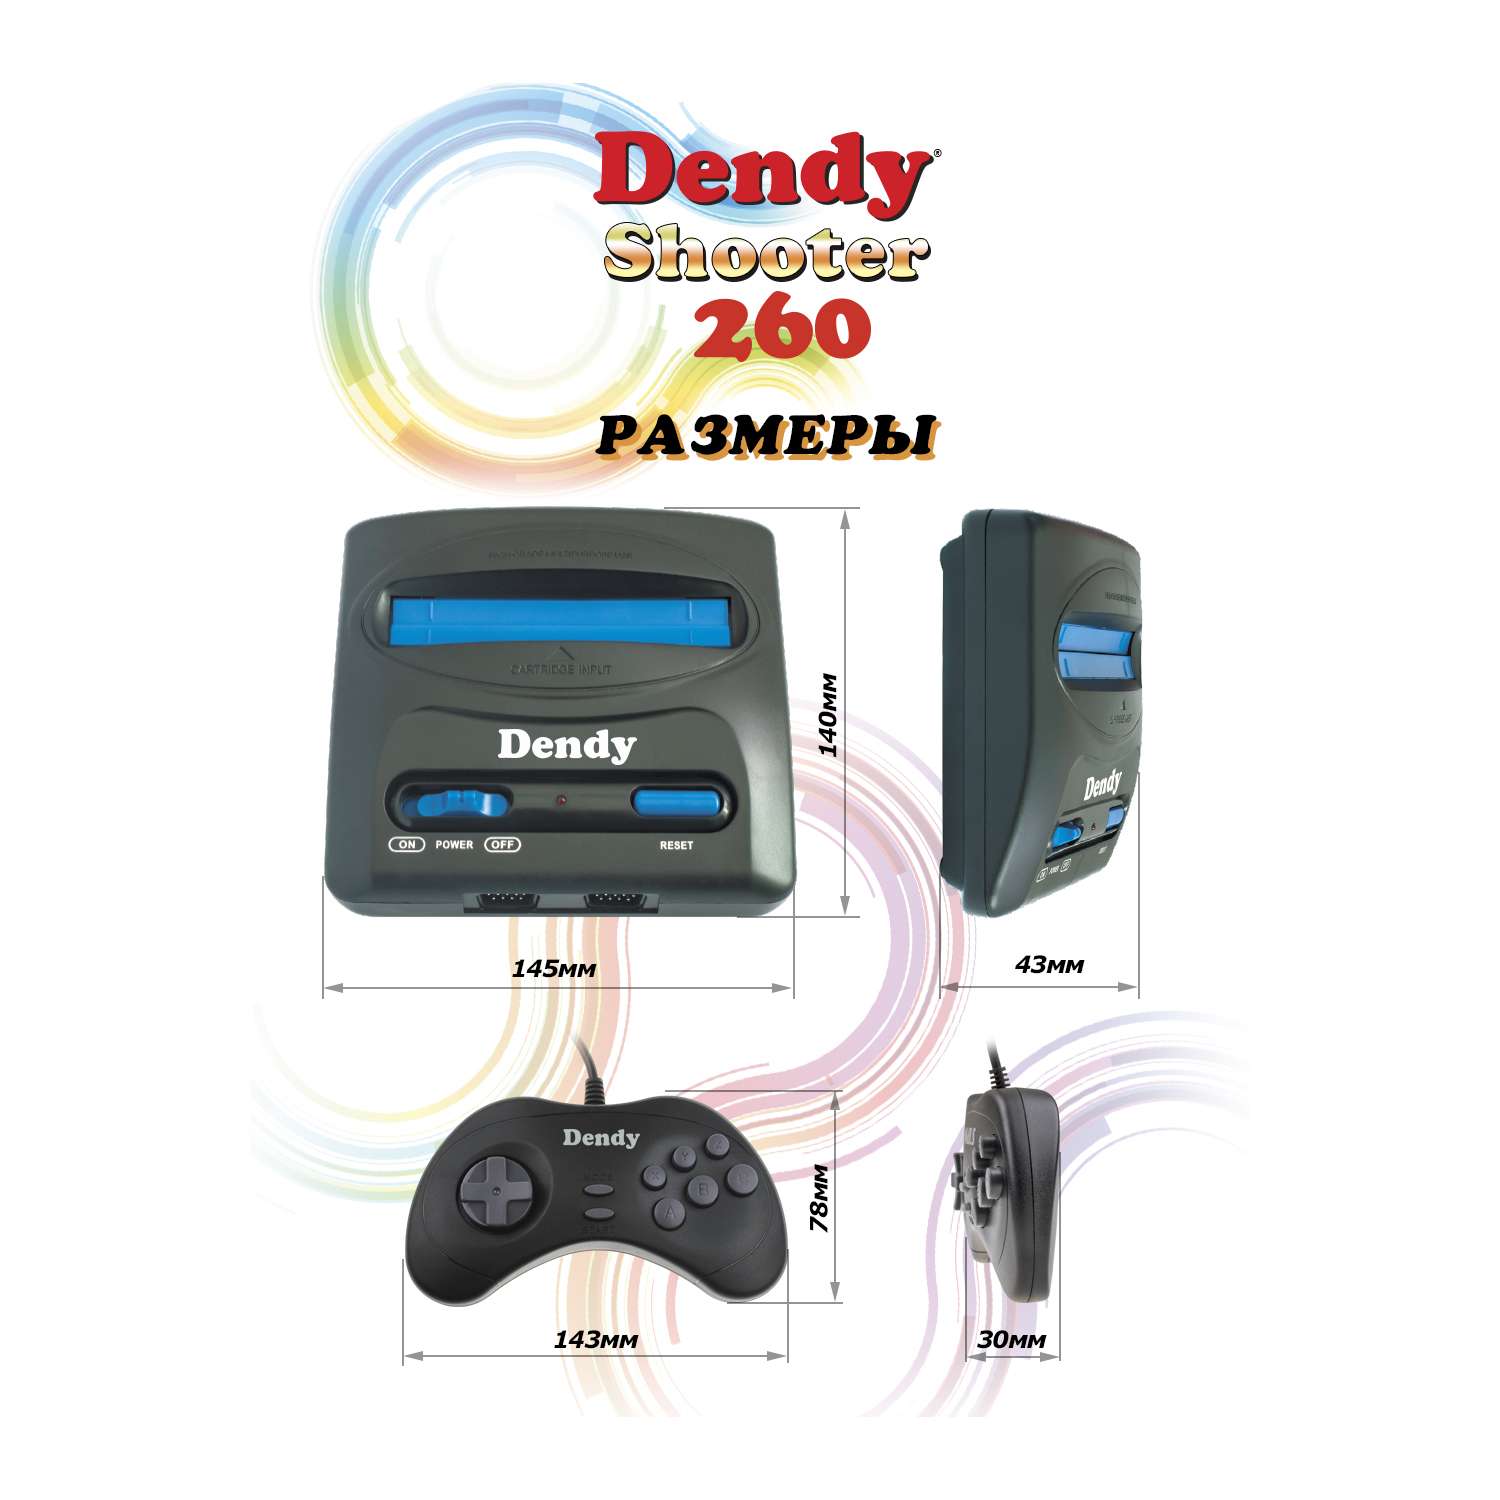 Игровая приставка Dendy Dendy Shooter 260 встроеннах игр + световой пистолет - фото 8